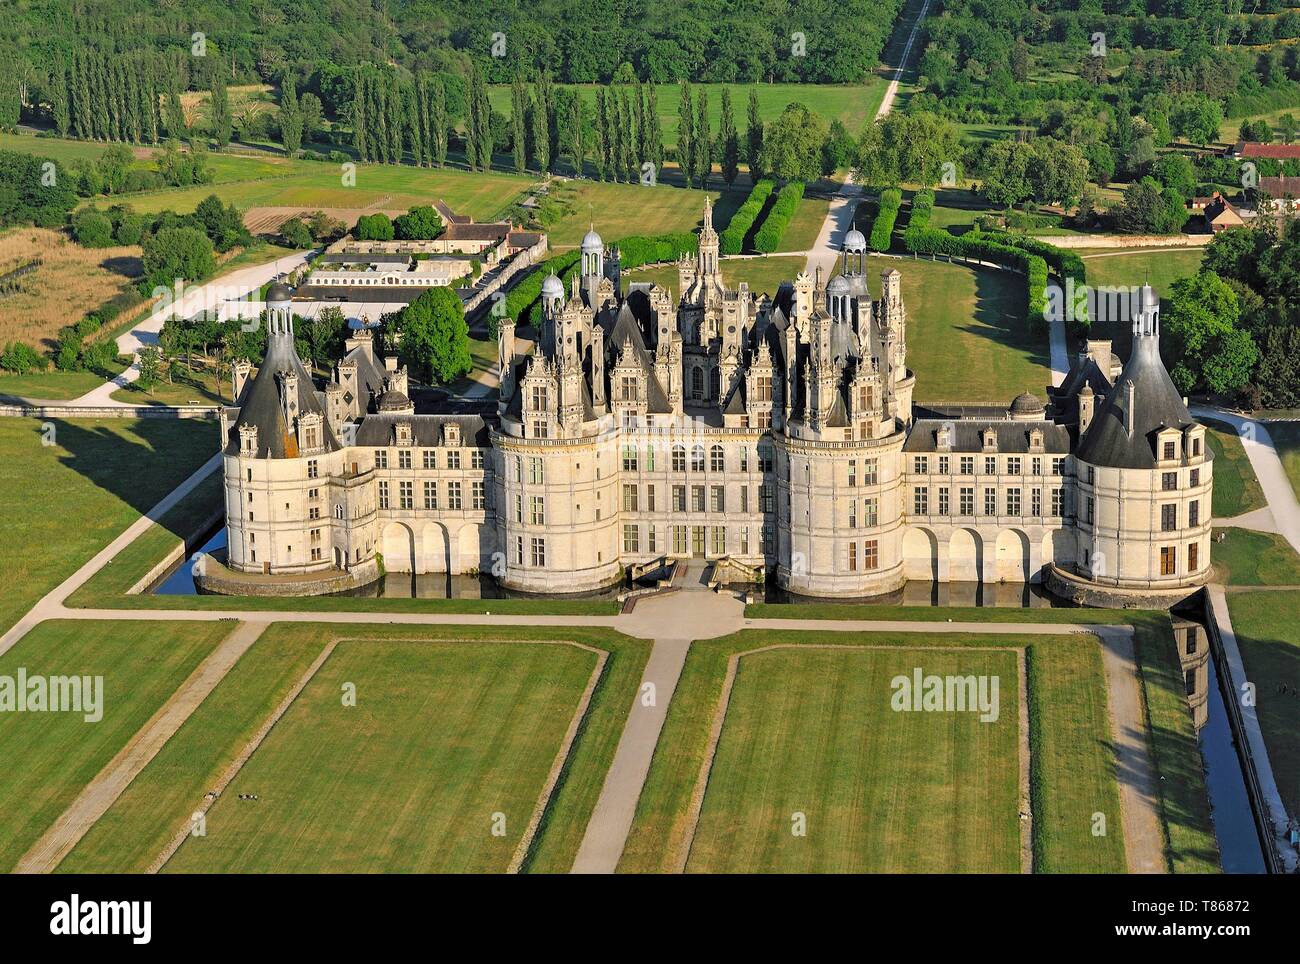 France, Loir et Cher, vallée de la Loire classée patrimoine mondial de l'UNESCO, Chambord, le château et ses jardins à la française (vue aérienne) Banque D'Images